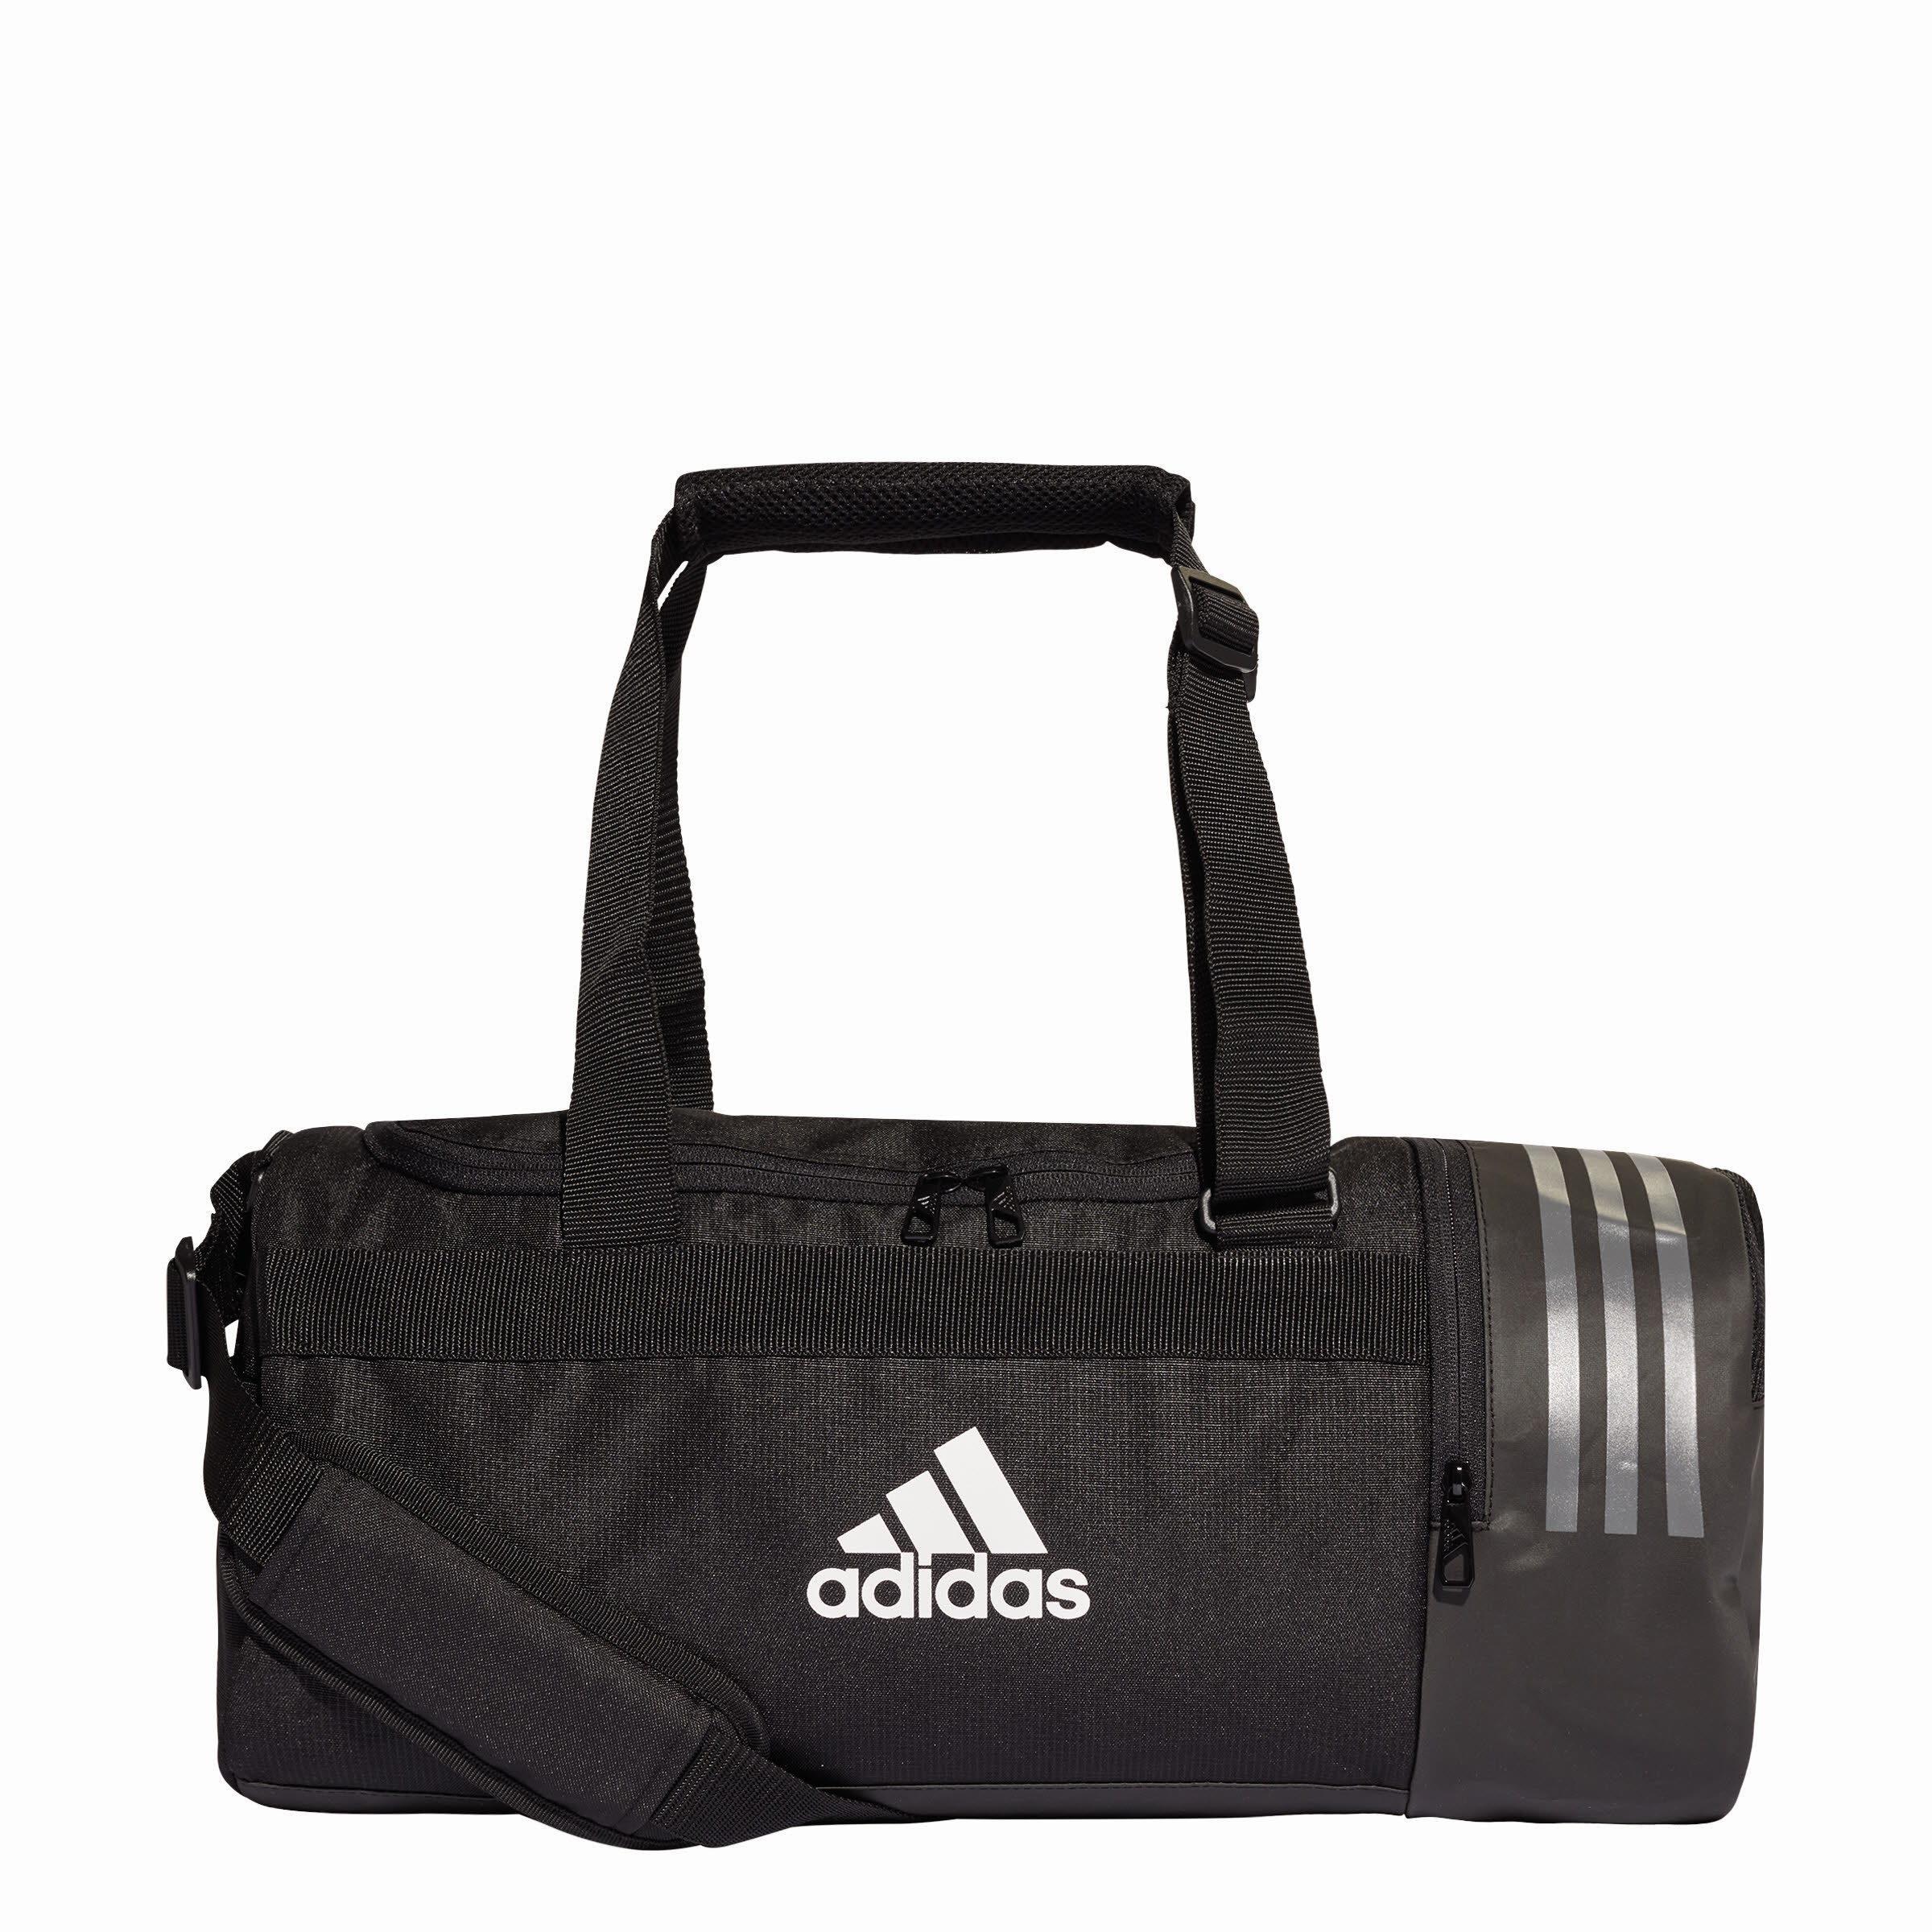 Adidas TRN CORE TB Bag / Sporttasche CG1532 Sporttaschen | Taschen | Ausrüstung | blackout shop